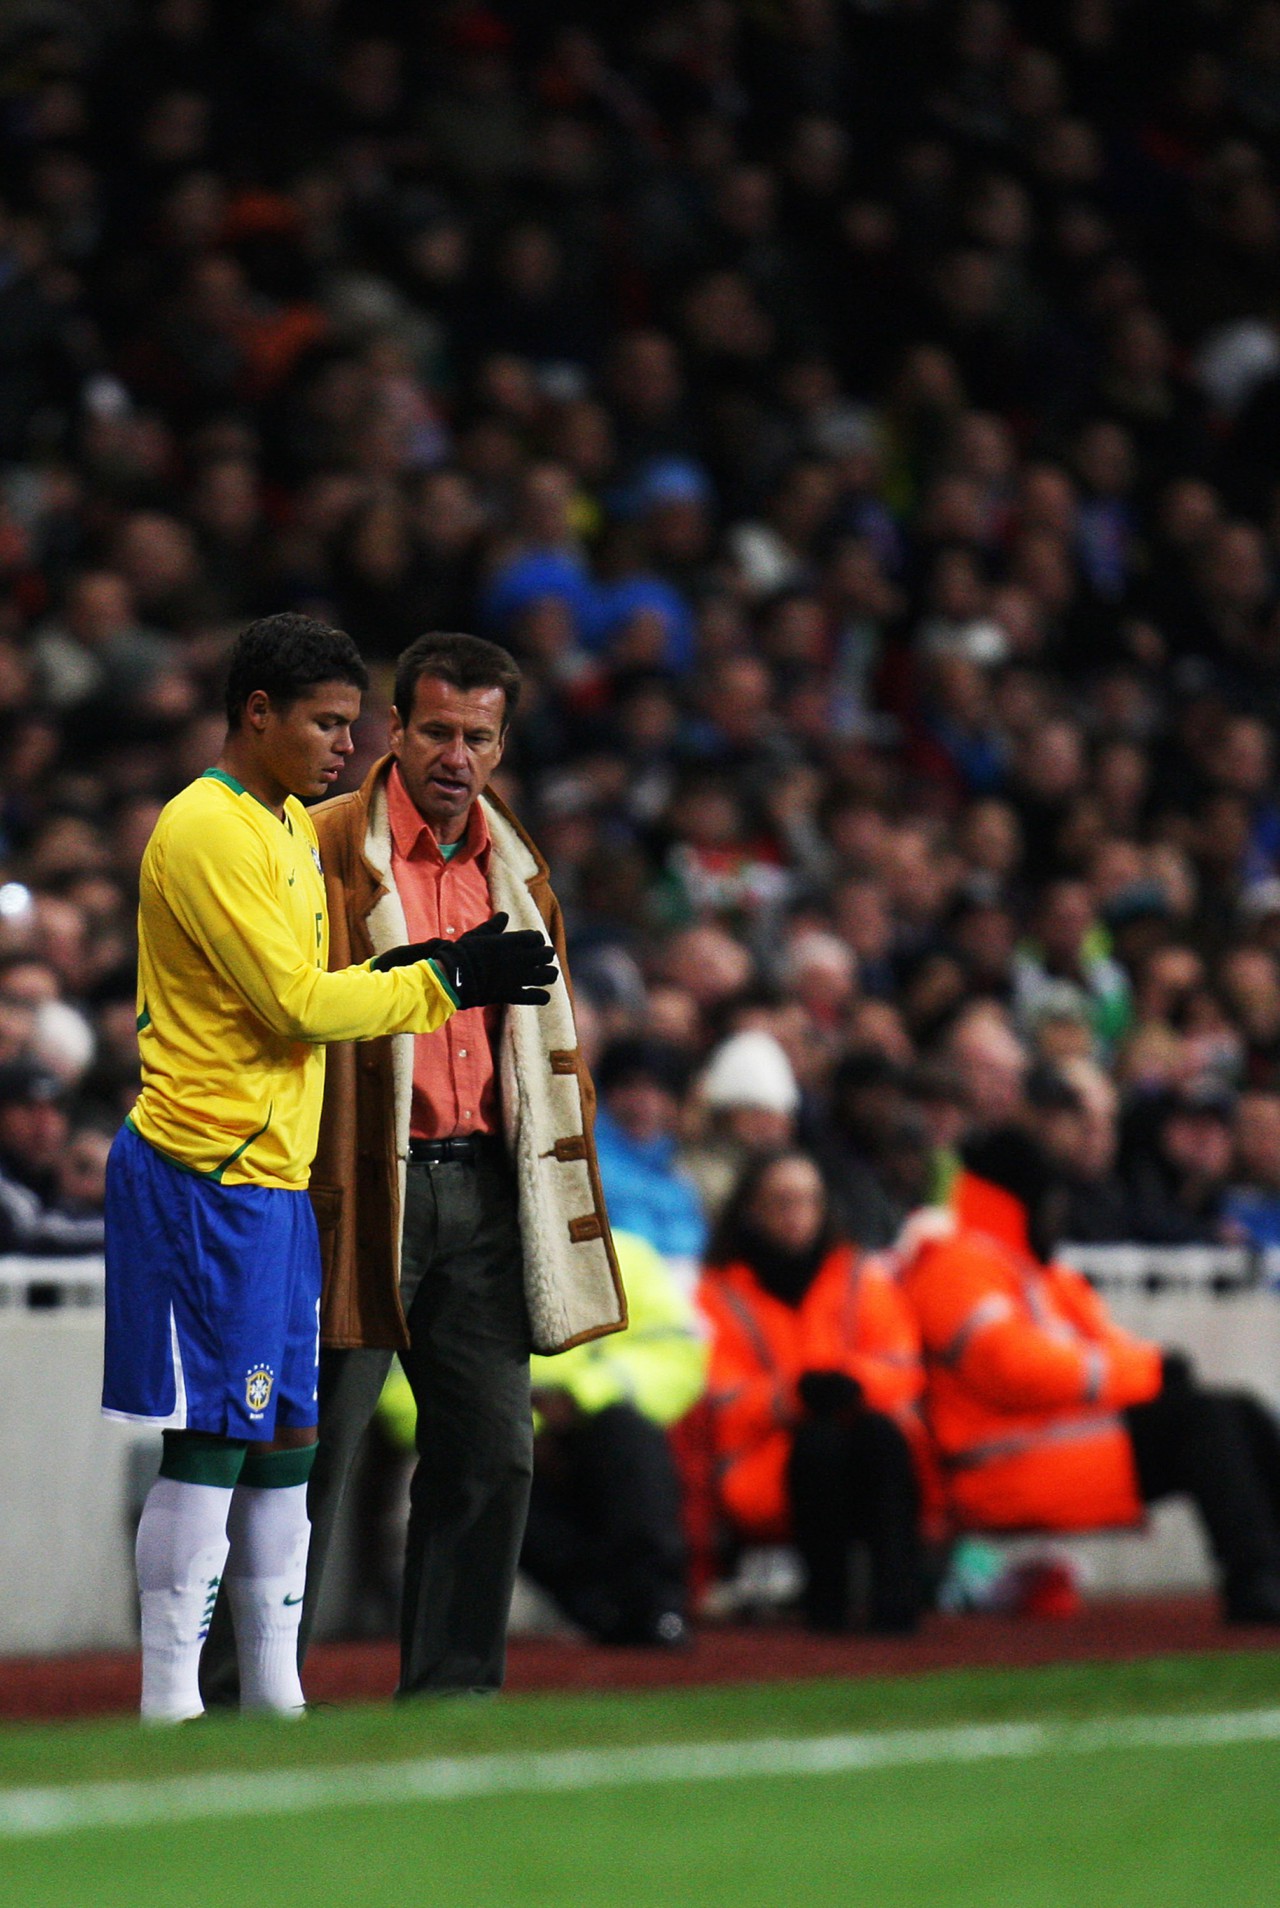 Em 2009, Thiago Silva recebe orientações de Dunga antes de entrar em campo no amistoso contra a Itália - Luca Ghidoni / Getty